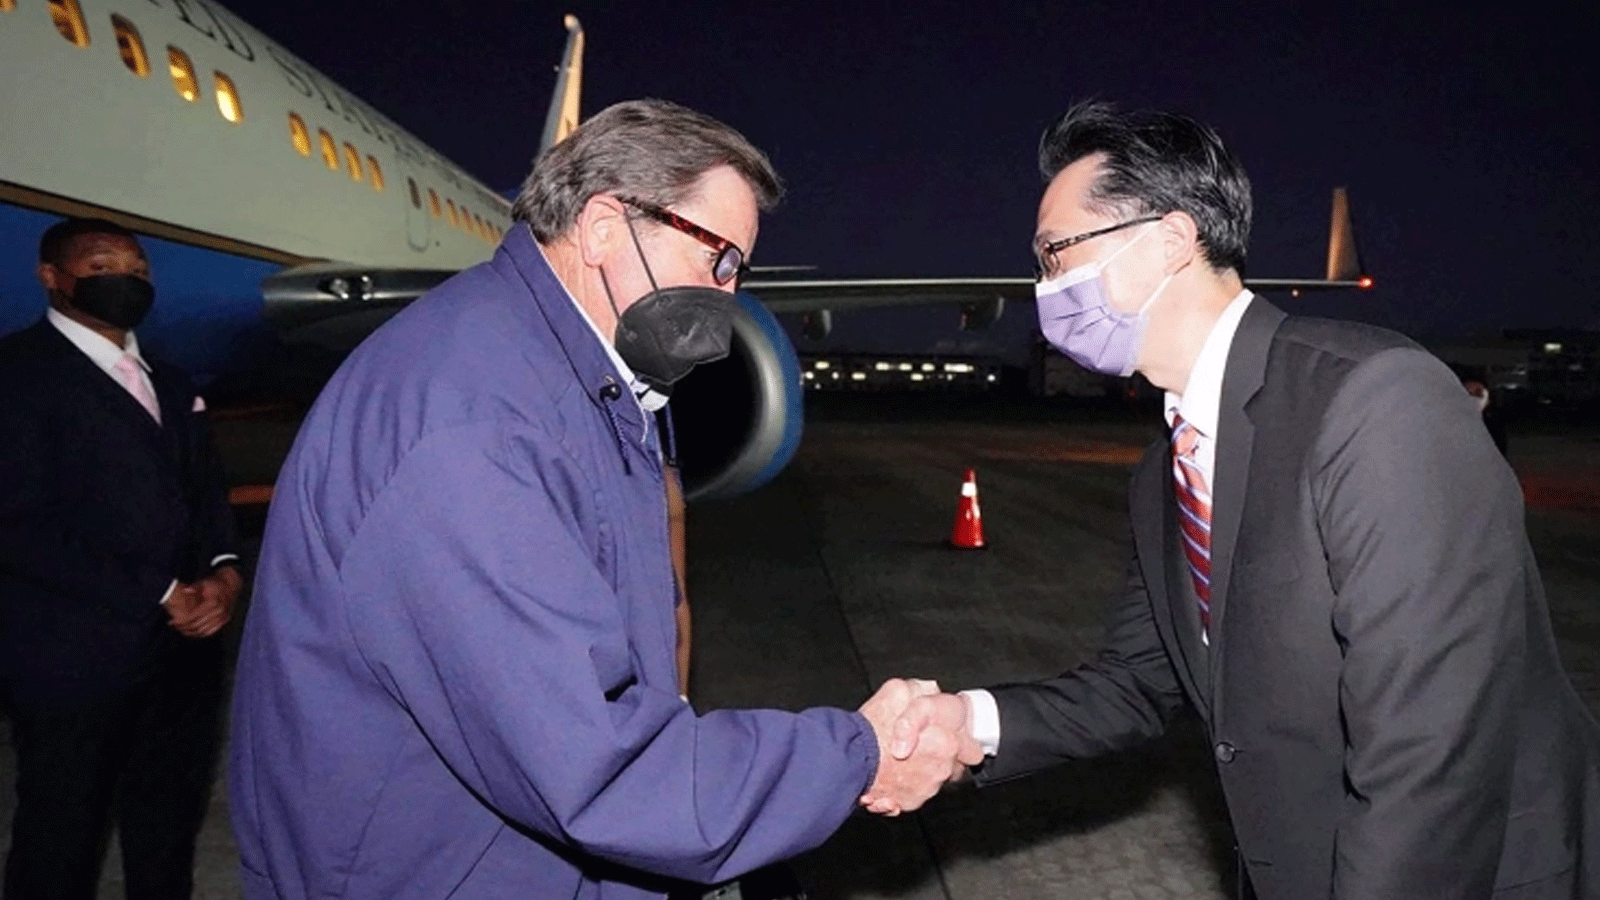 النائب الأميركي جون جاراميندي، إلى اليسار، يصافح الدبلوماسي التايواني دوغلاس يو تيان هسو عند وصوله إلى مطار سونغشان في تايبيه